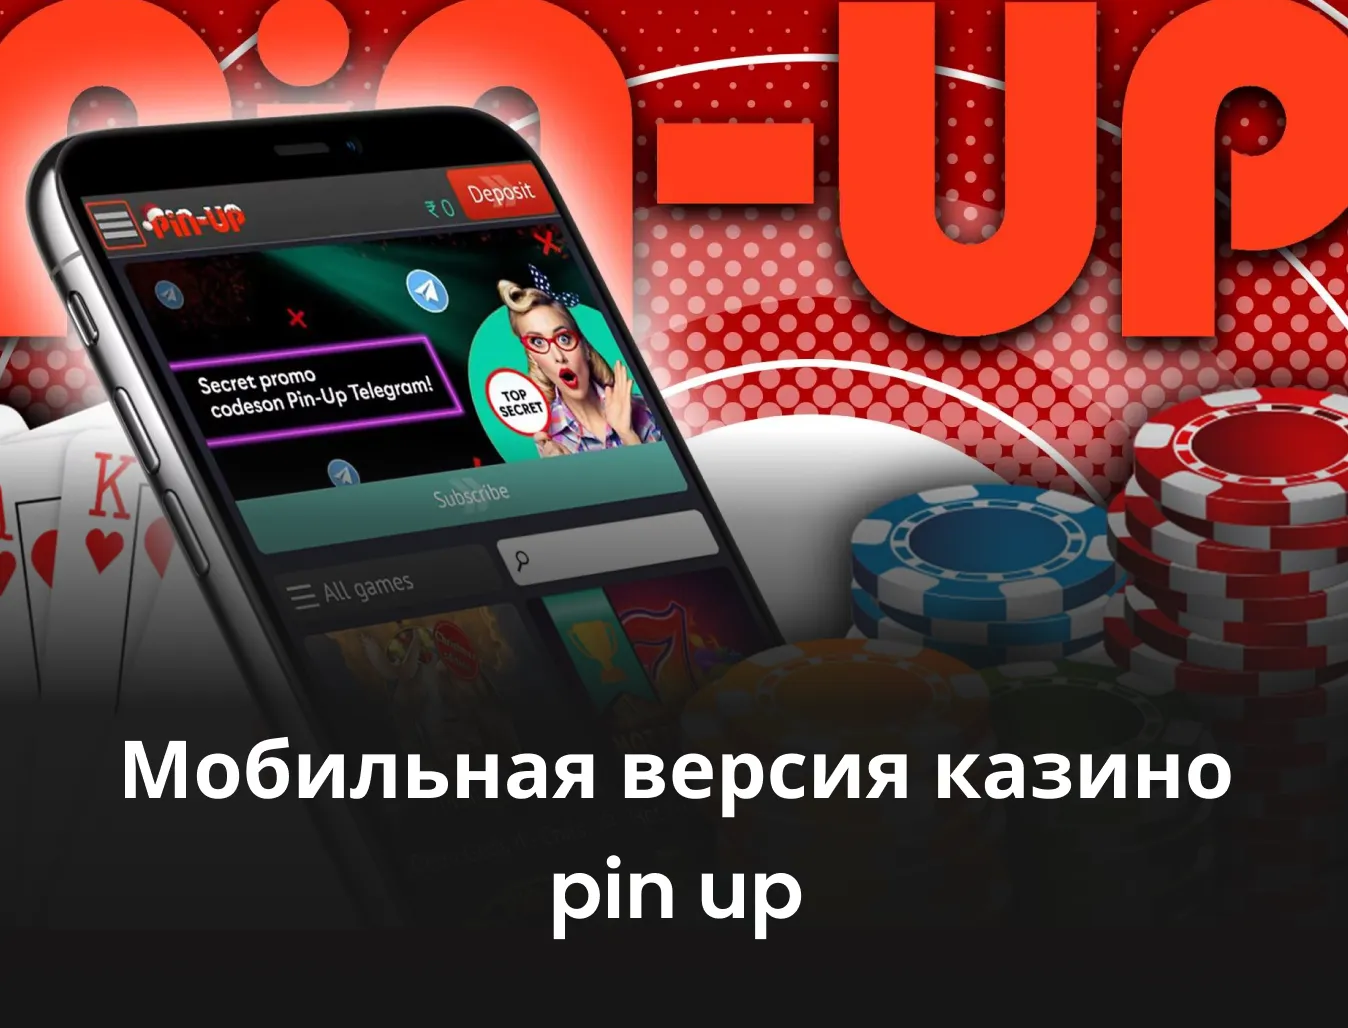 мобильная версия казино пин ап